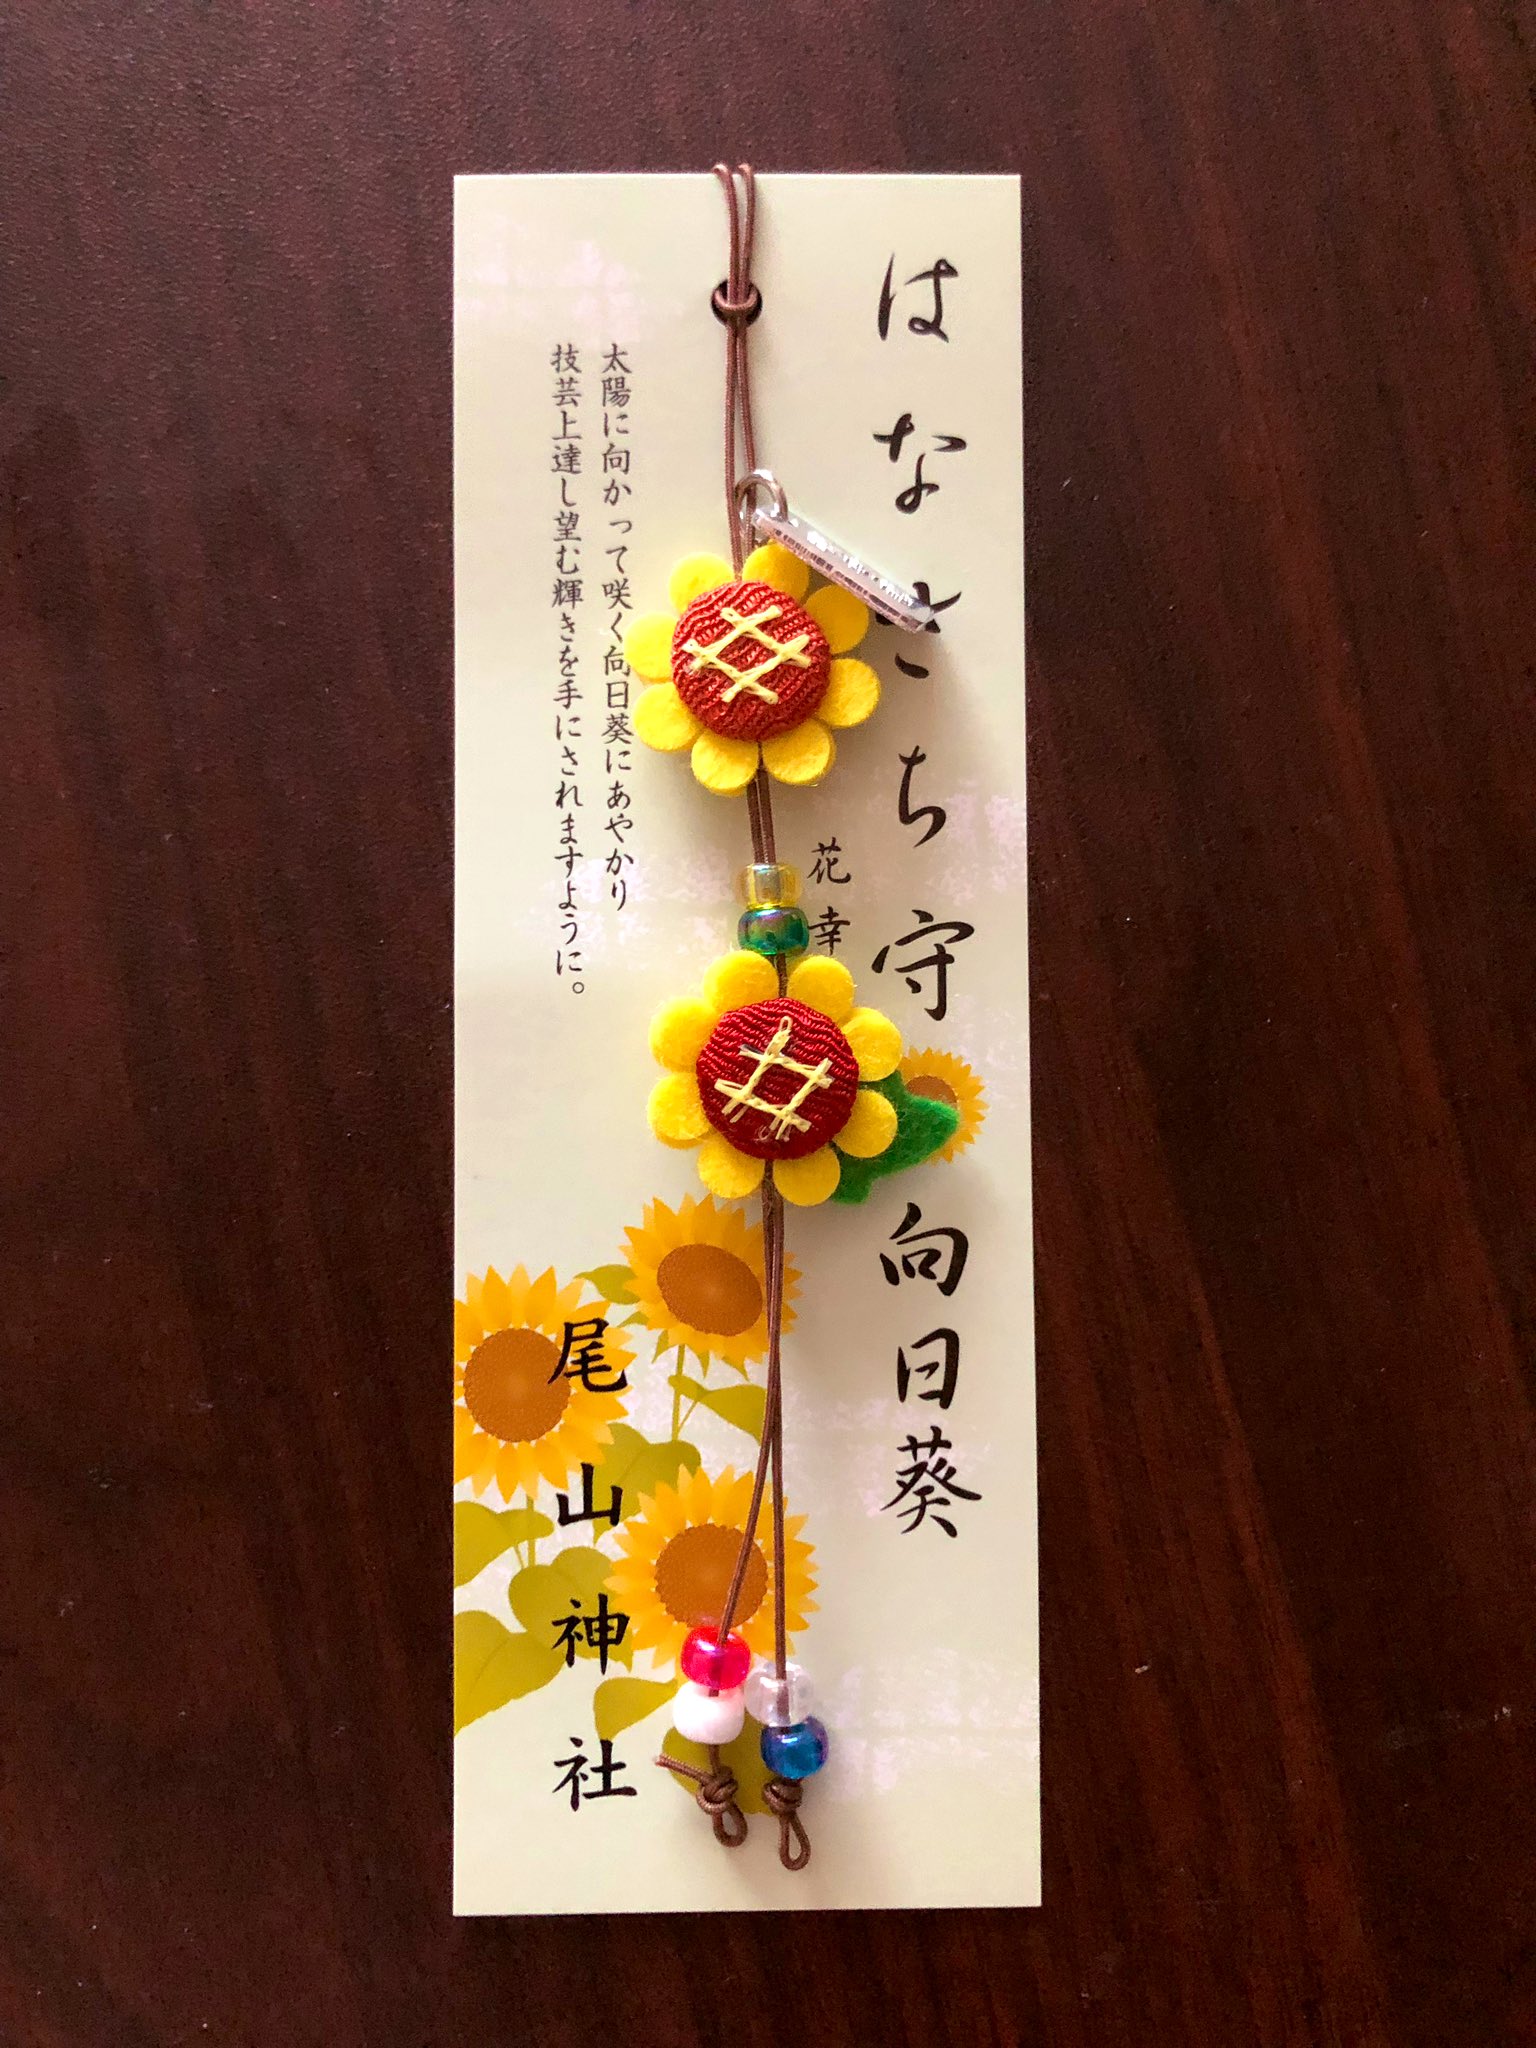 ポハン 金沢の尾山神社というところで見つけた素敵なお花のお守り ひまわりの他にもいろんな種類のお花あったよ T Co Yldopocojy Twitter